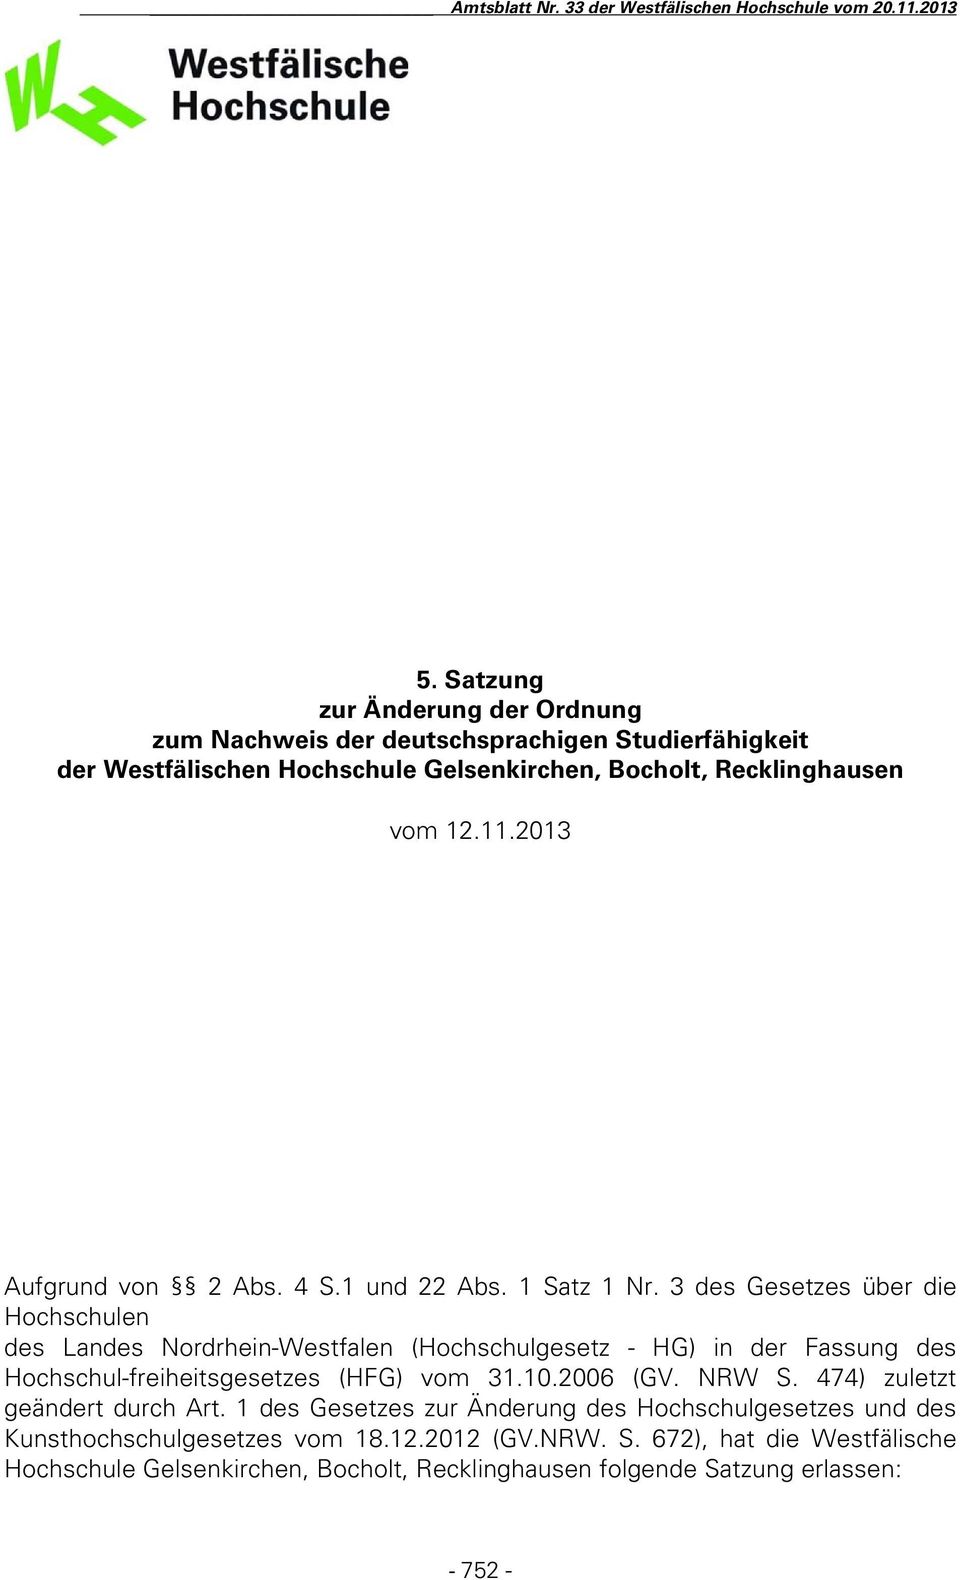 3 des Gesetzes über die Hochschulen des Landes Nordrhein-Westfalen (Hochschulgesetz - HG) in der Fassung des Hochschul-freiheitsgesetzes (HFG) vom 31.10.